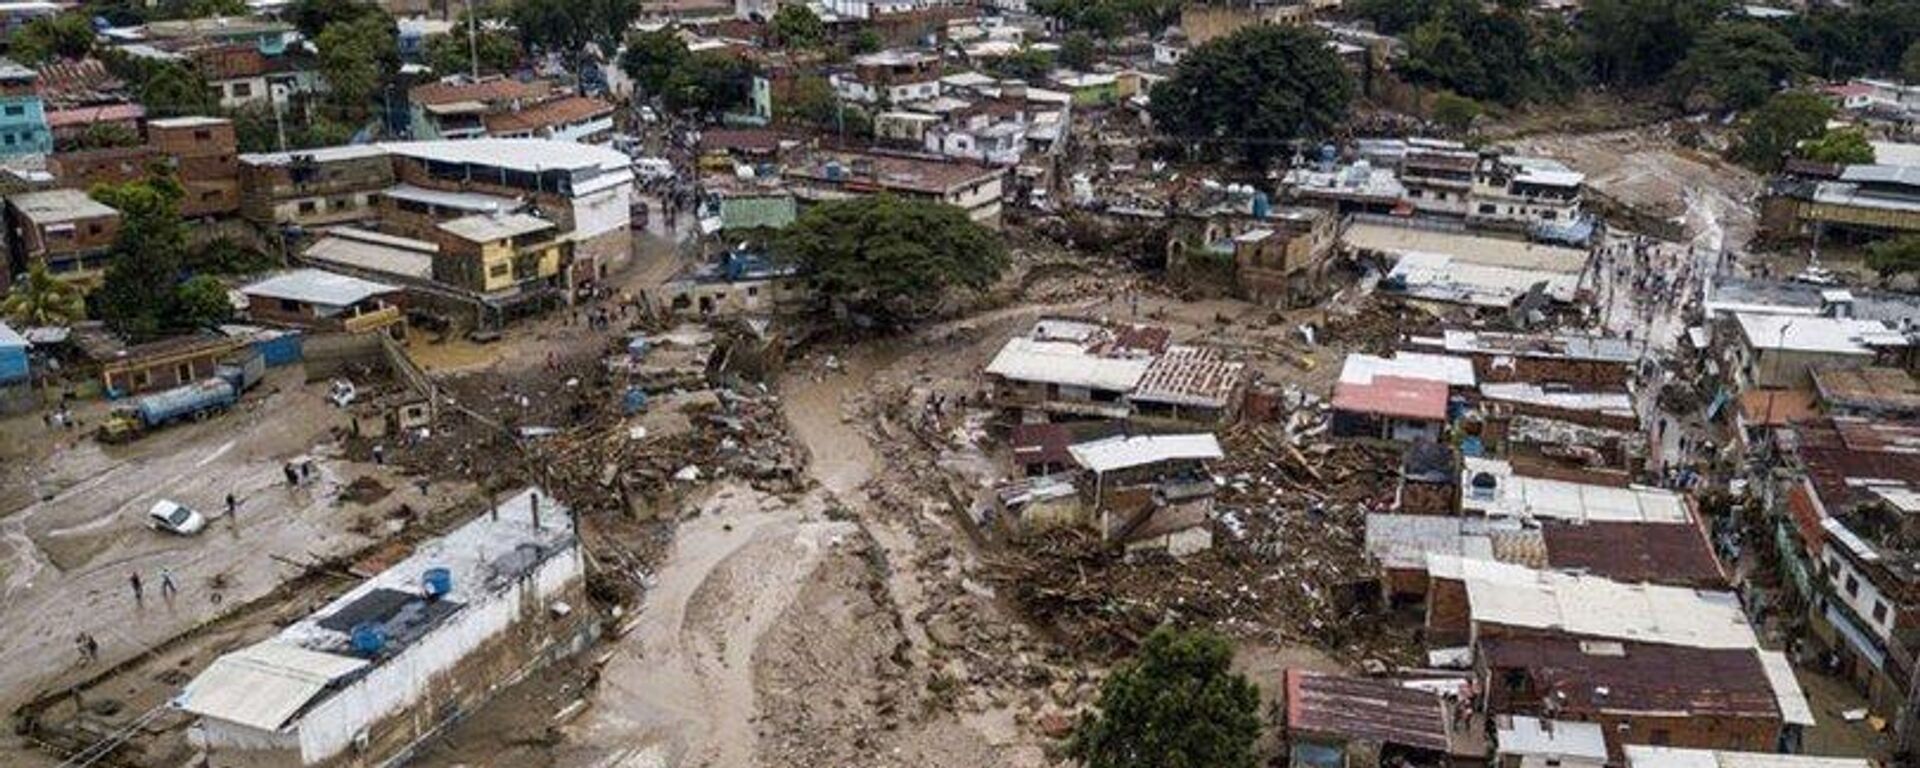 Venezüella’da yoğun yağışların ardından meydana gelen toprak kayması sonucu 22 kişinin hayatını kaybettiği, 50'den fazla kişinin ise kayıp olduğu bildirildi. - Sputnik Türkiye, 1920, 10.10.2022